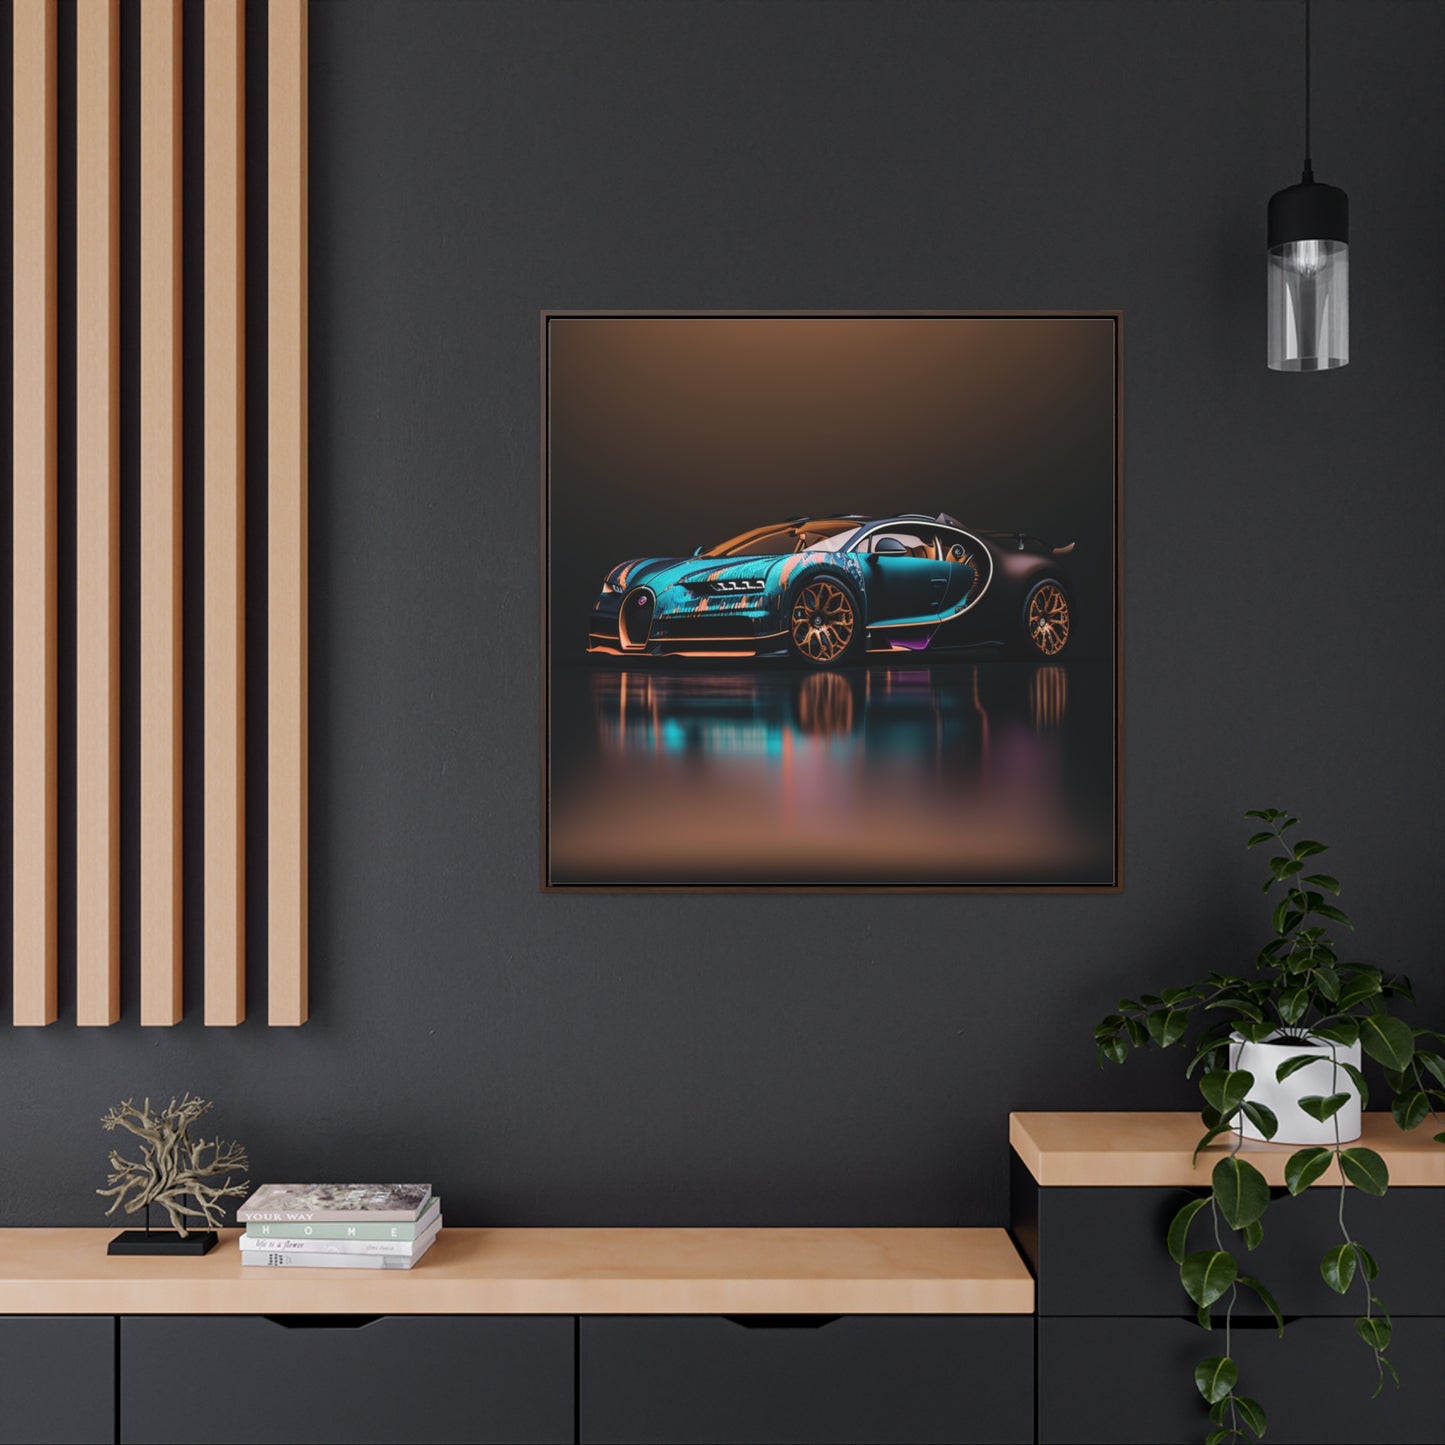 Gallery Canvas Wraps, Square Frame Bugatti Blue 2